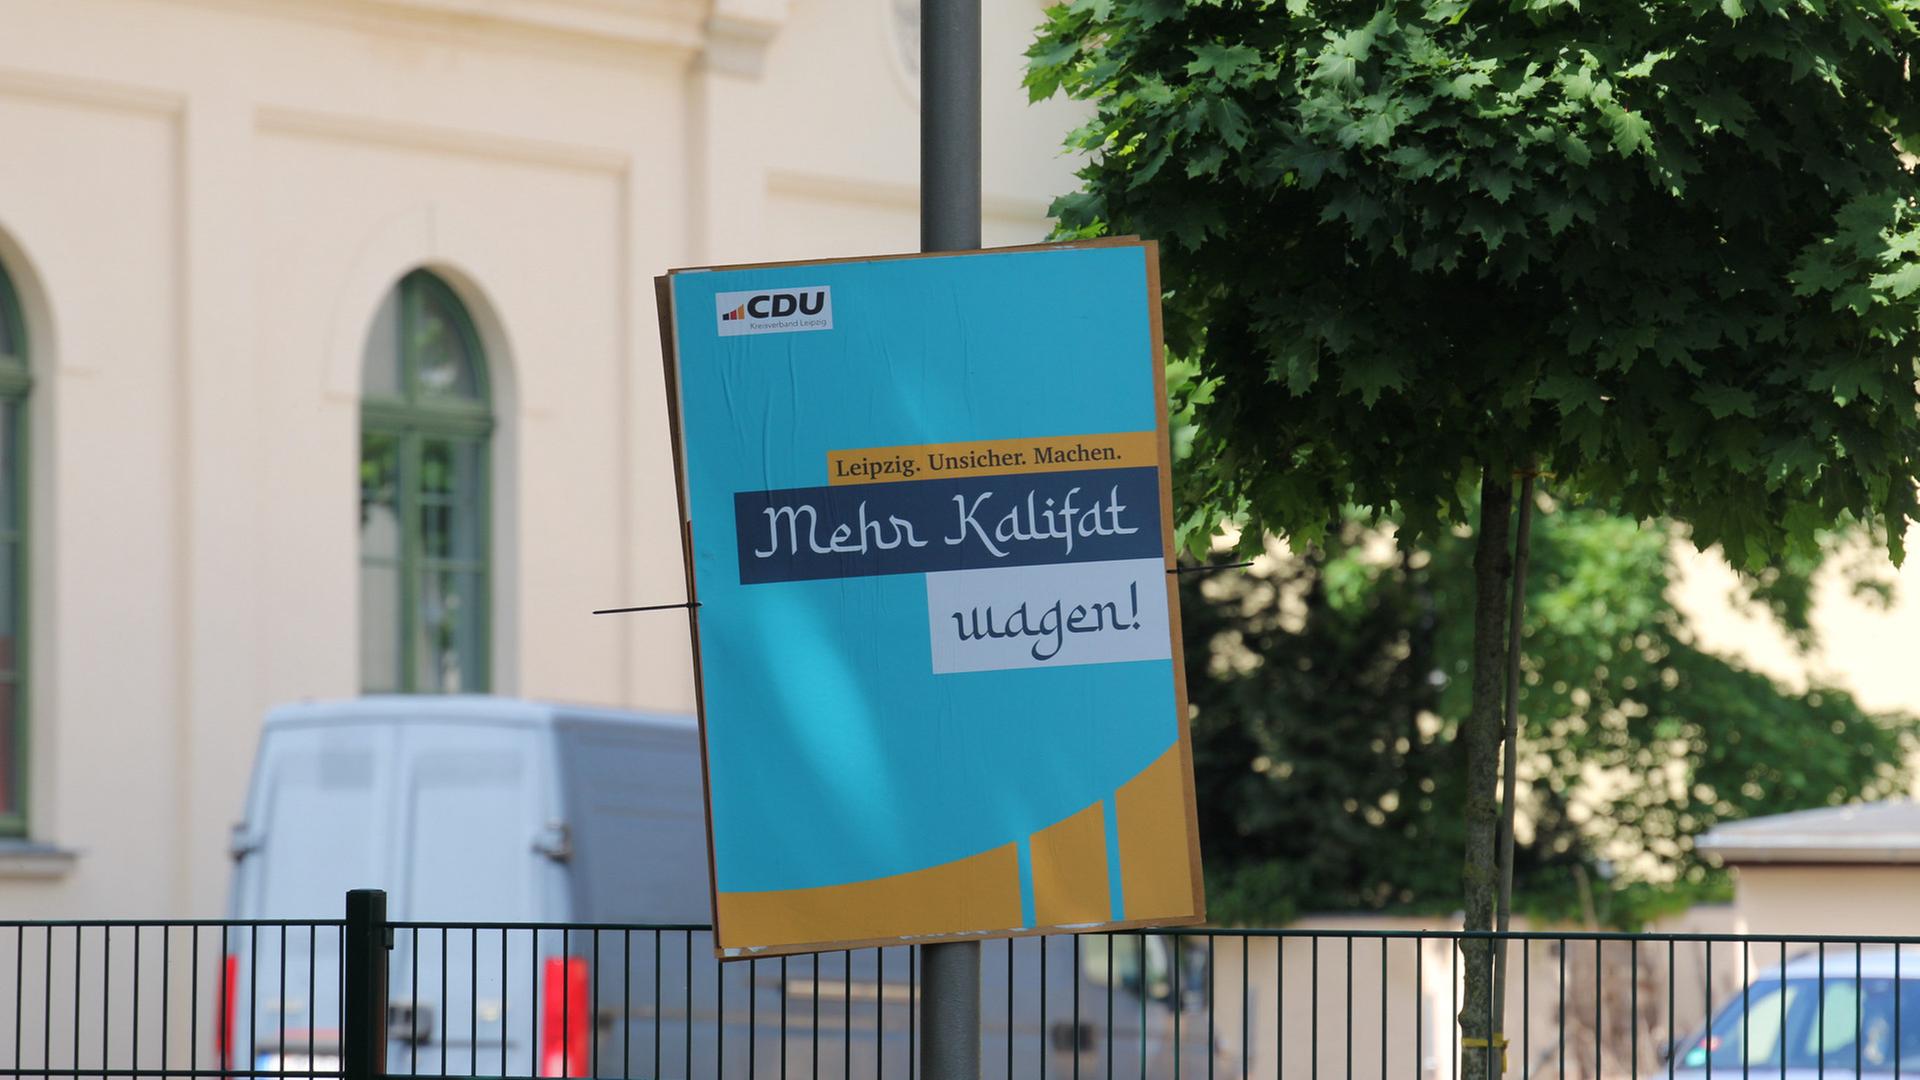 Ein gefälschtes Wahlplakat der CDU in Leipzig hängt an einem Masten. Darauf steht unter der Zeile "Leipzig. Unsicher. Machen" die Aufschrift "Mehr Kalifat wagen!".